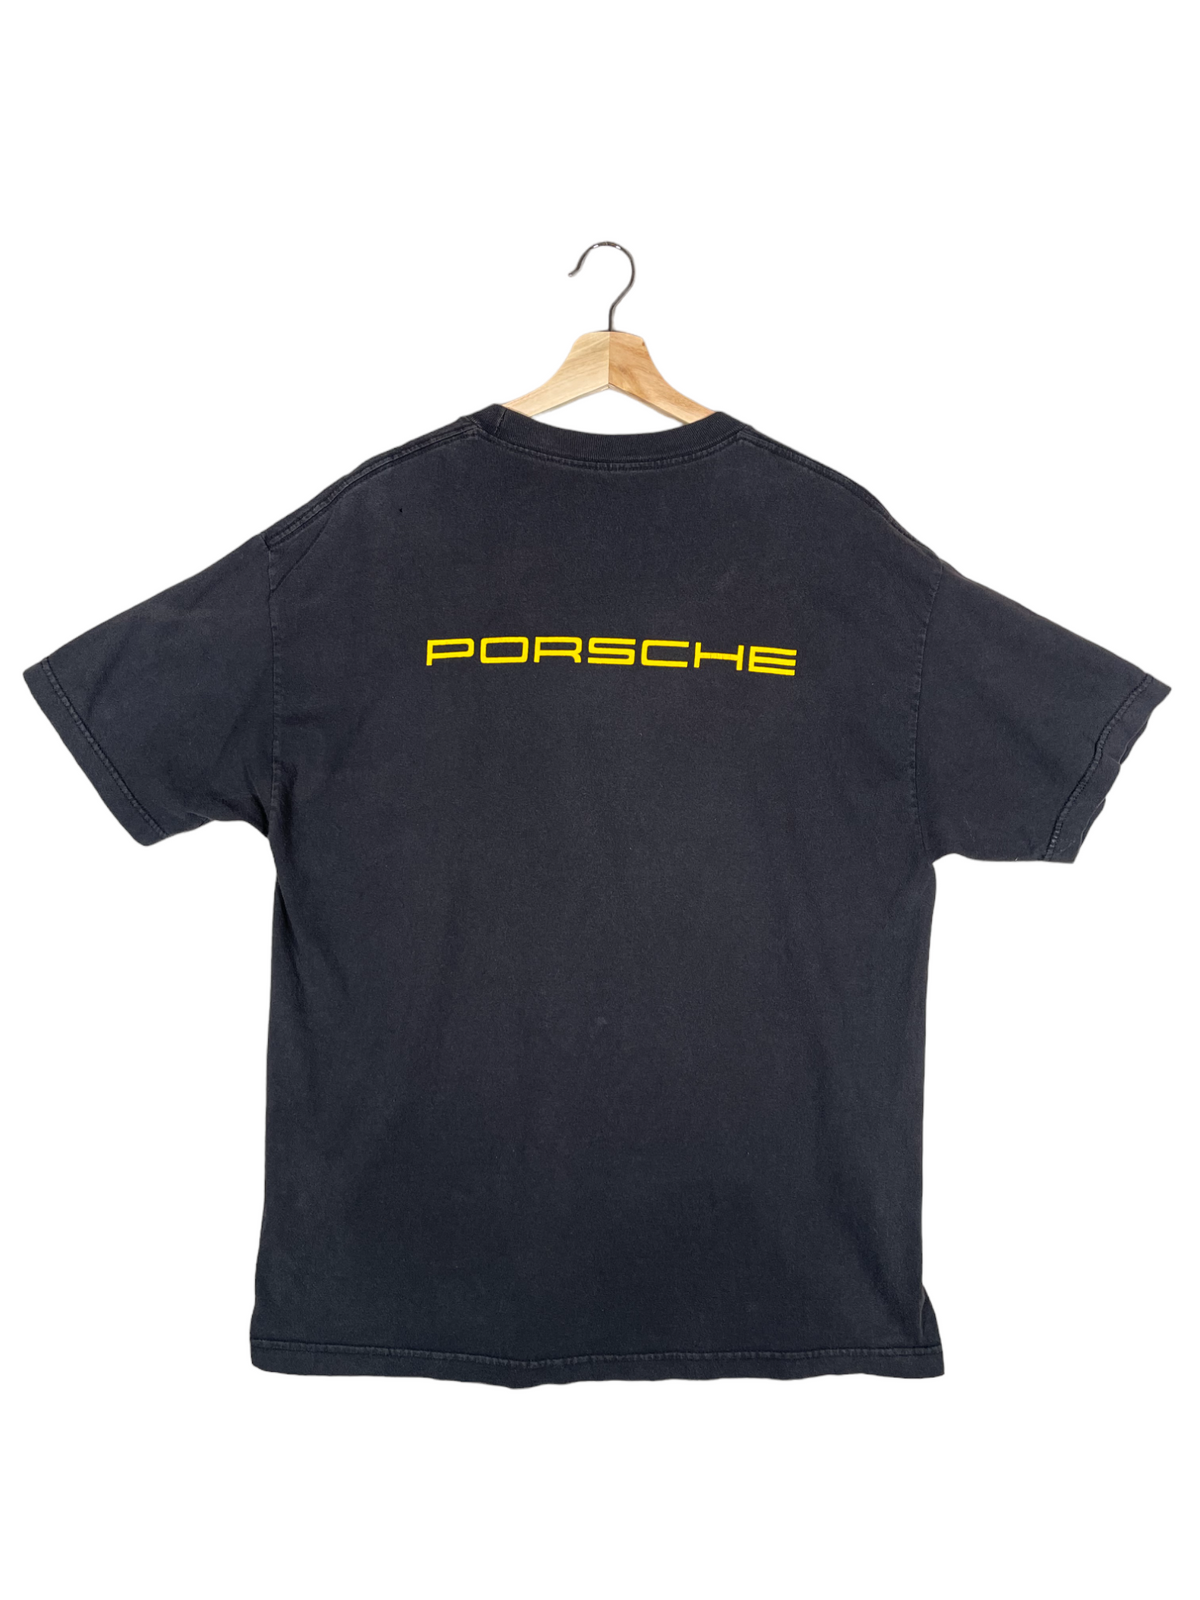 Vintage 1990’s Porsche Classic Restoration T-Shirt